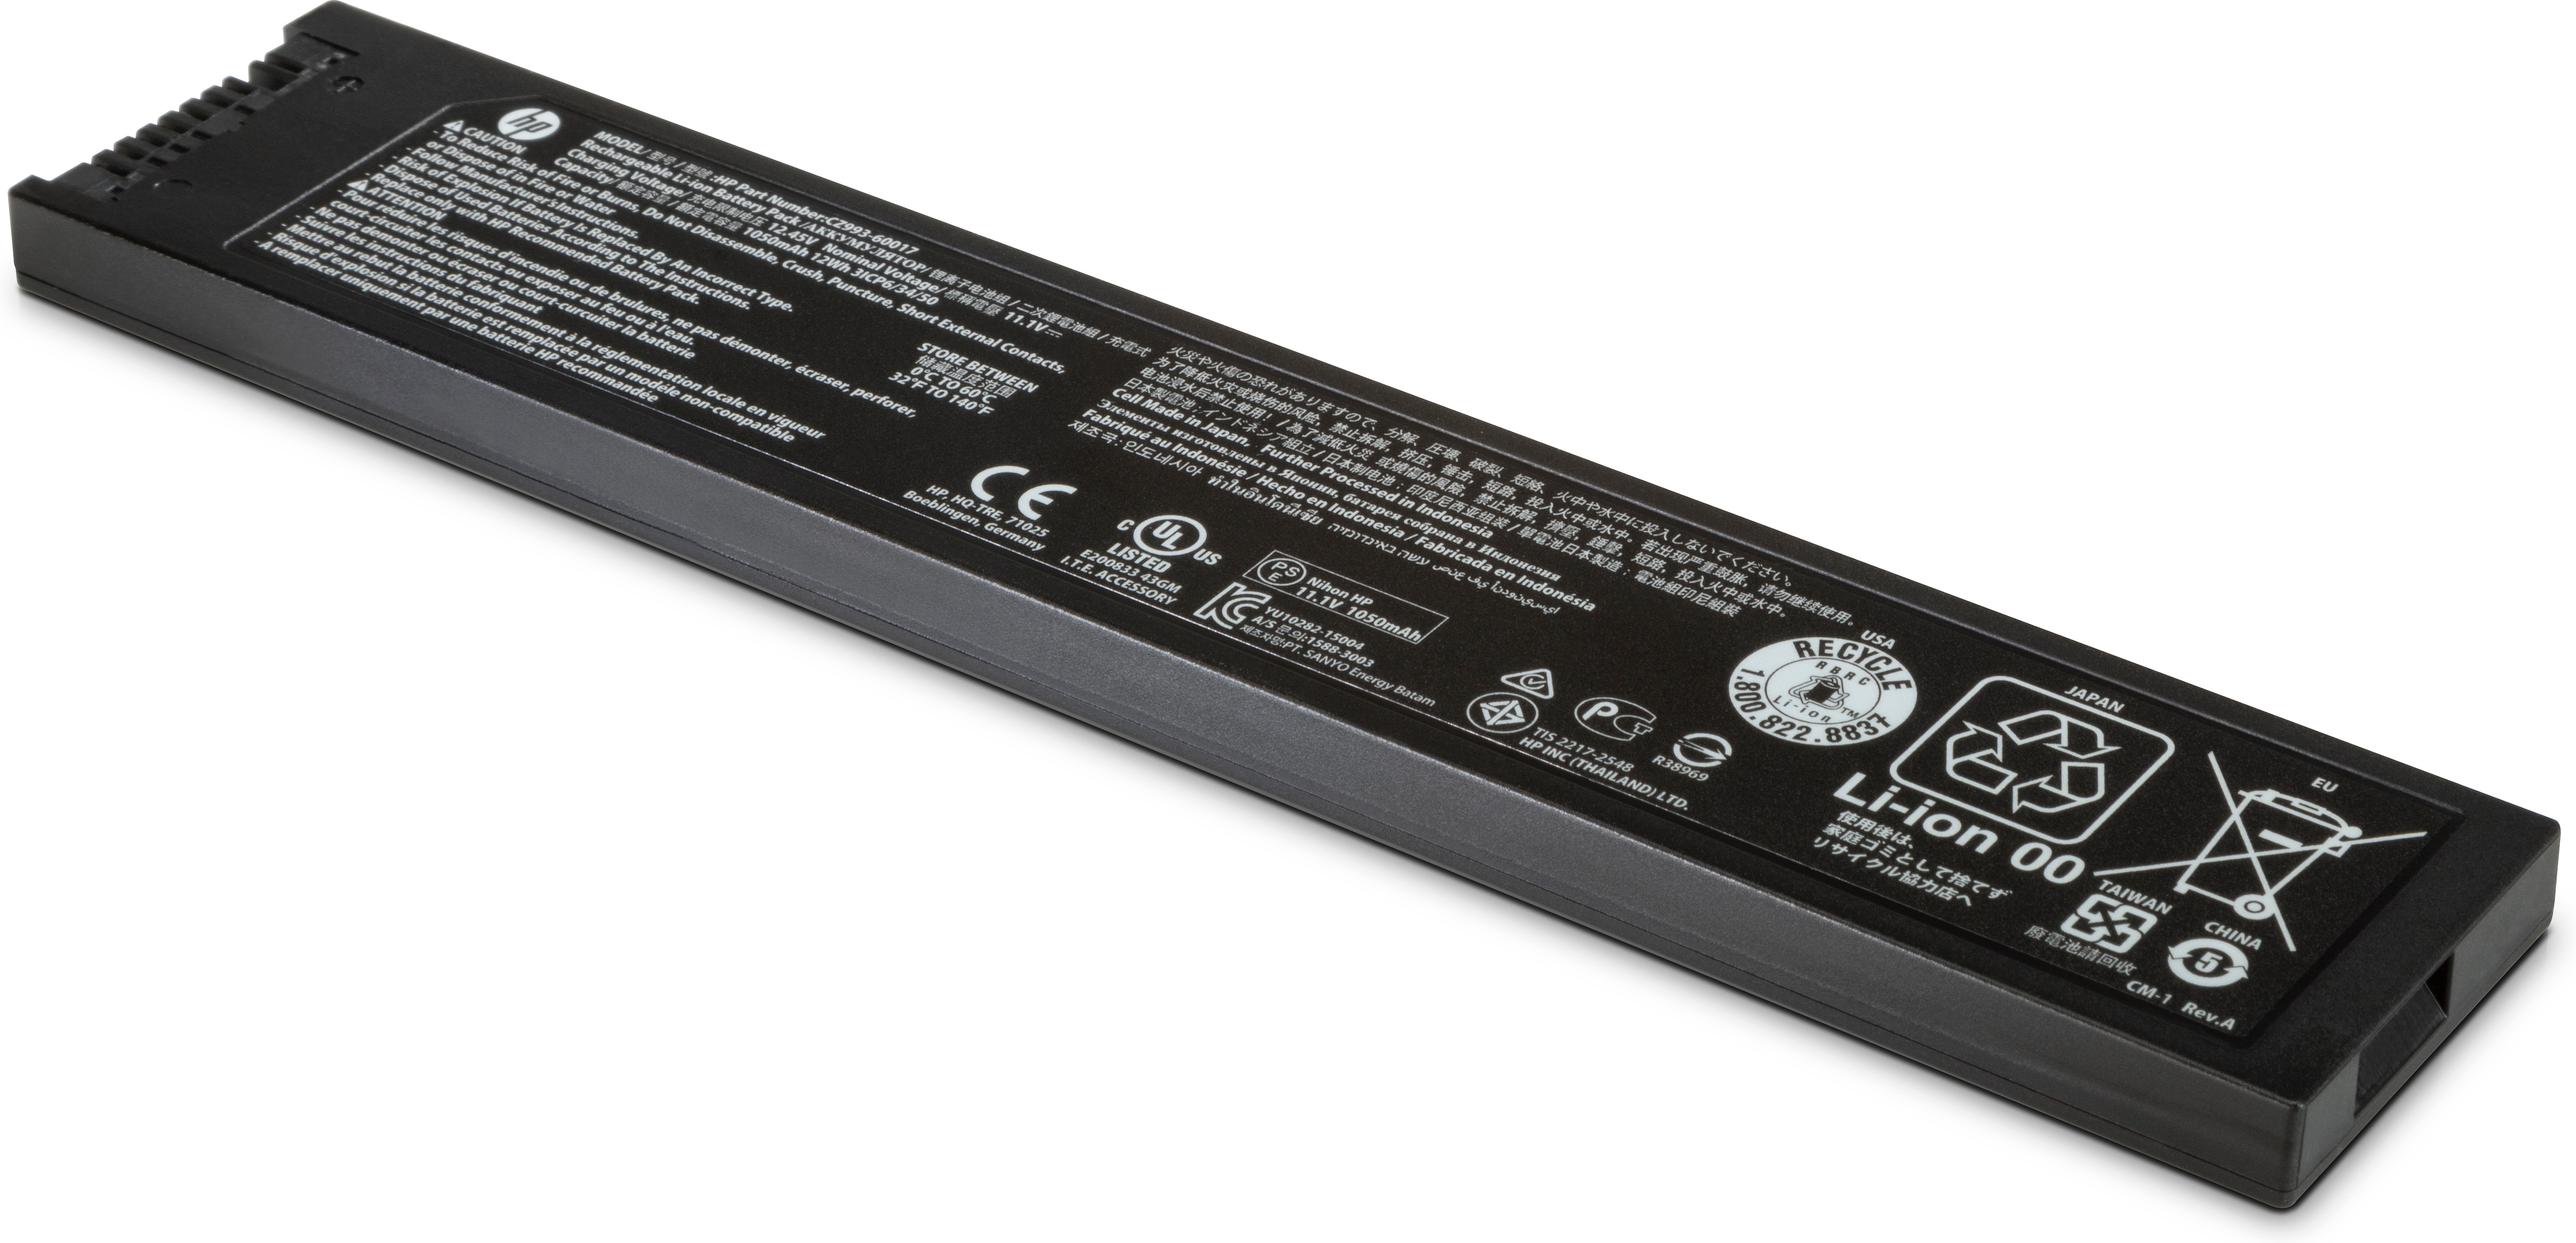 HP  Drucker-Batterie - 1 x Lithium-Ionen - für Officejet 200